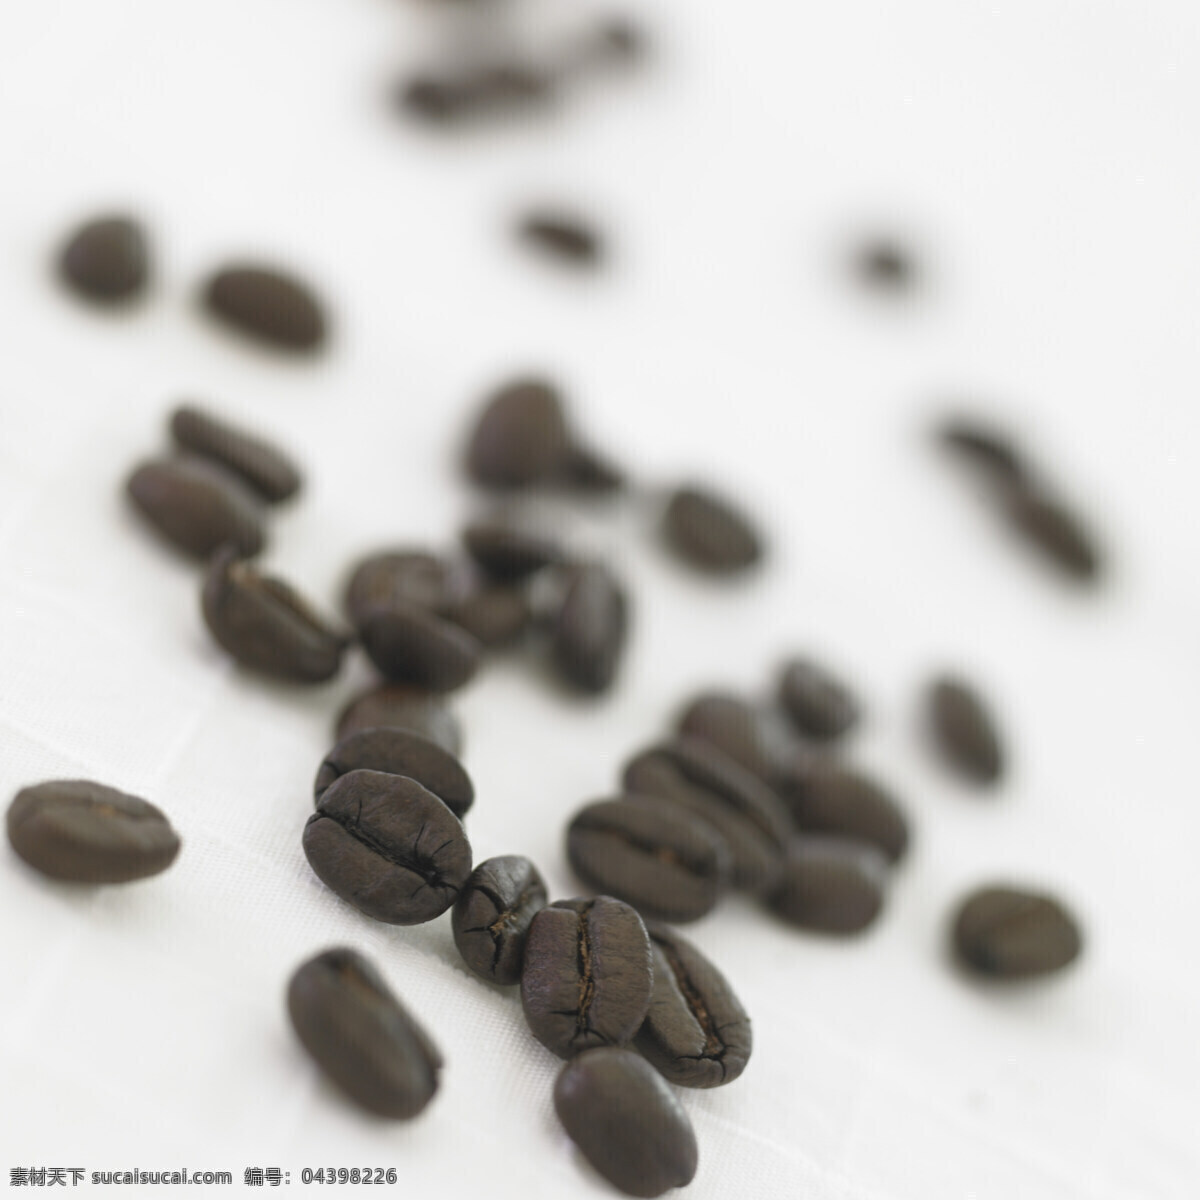 咖啡豆 特写 咖啡 摄影图 高清图片 咖啡图片 餐饮美食